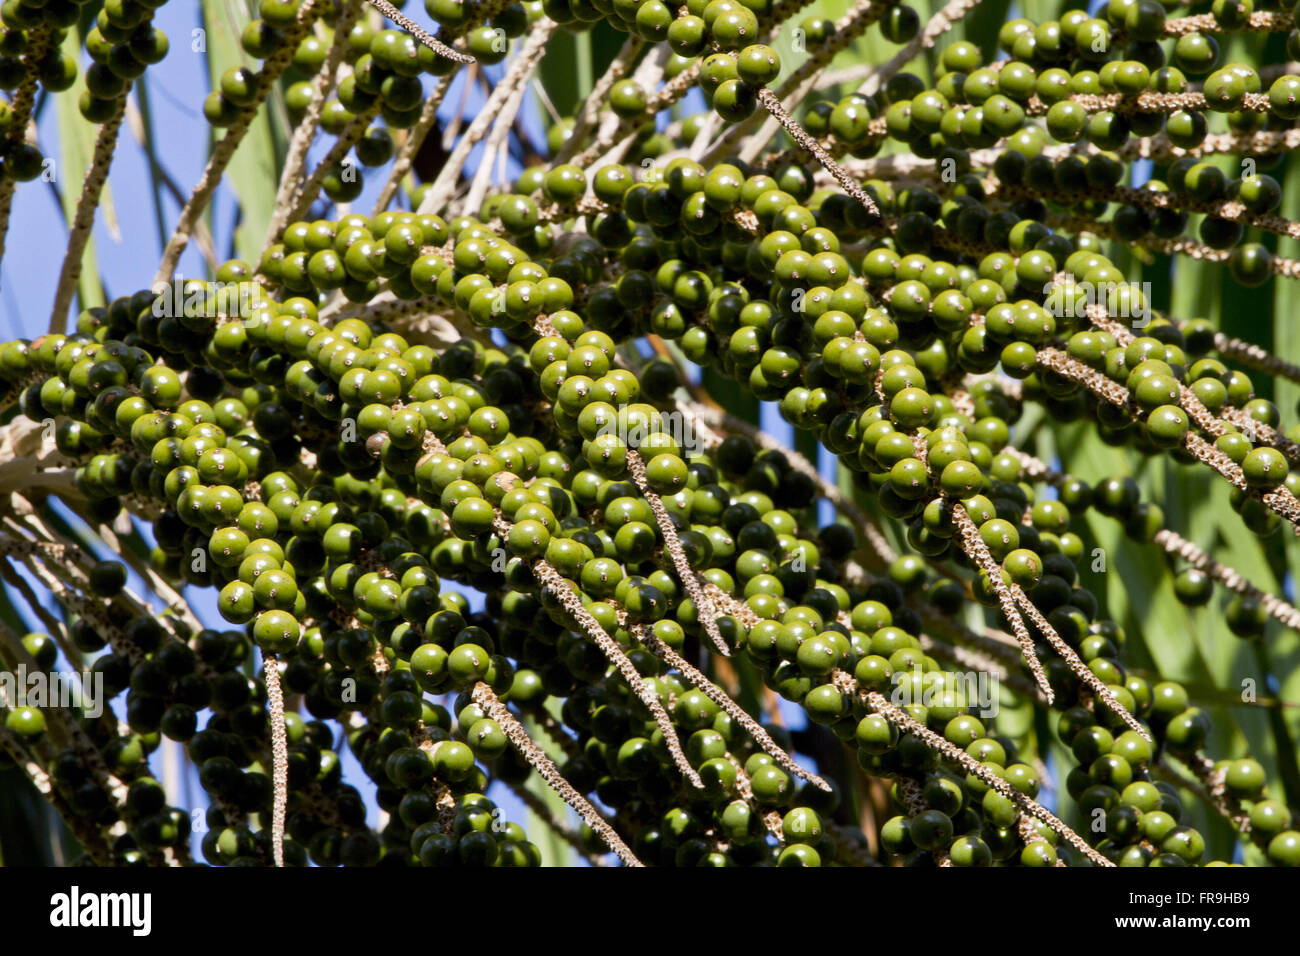 Green fruits of acai - Euterpe oleracea Stock Photo